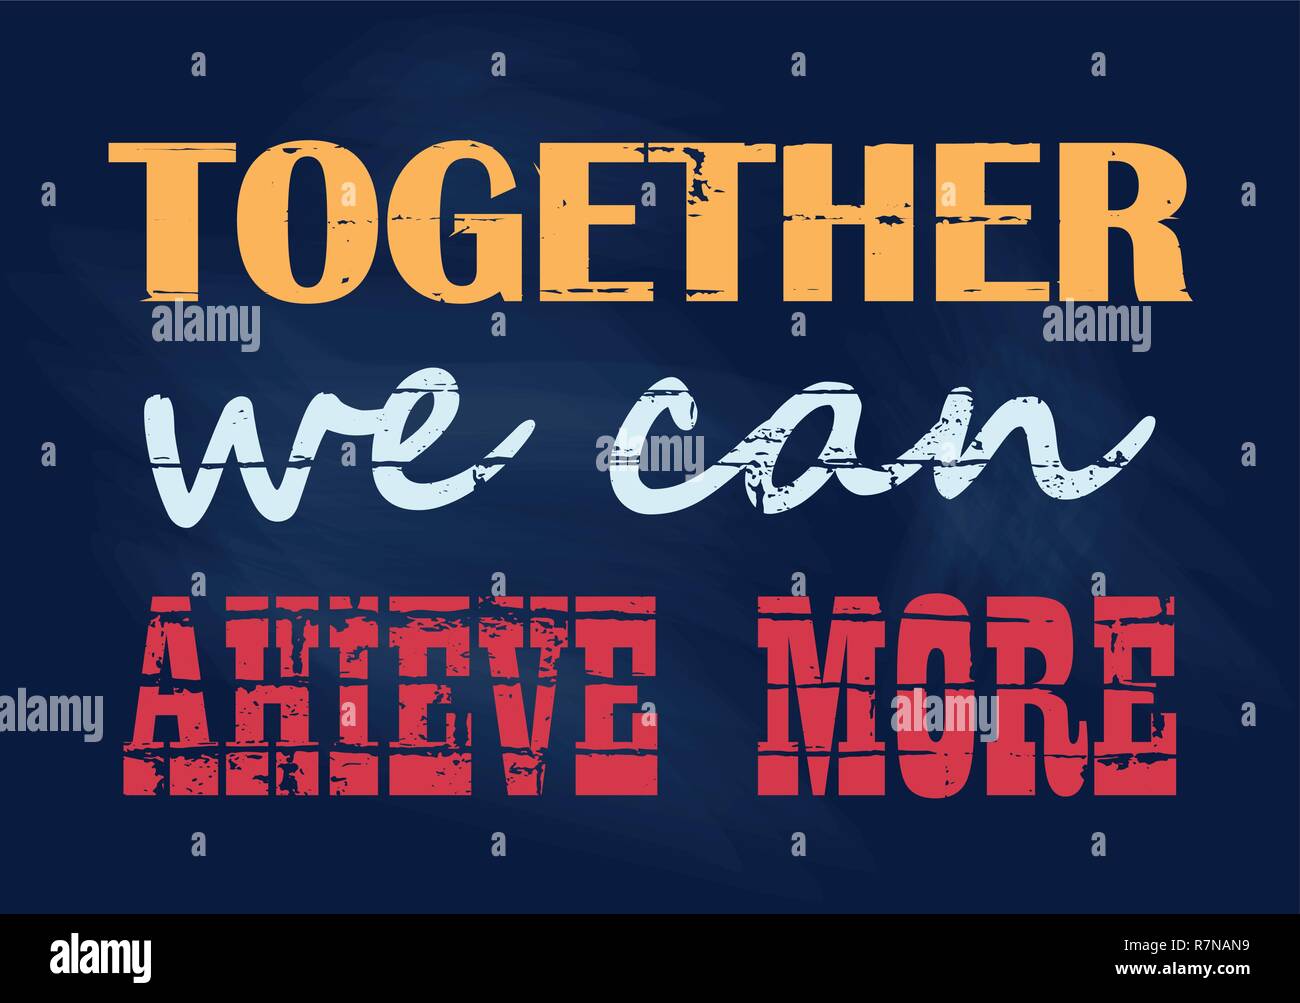 Inspirierende motivation Zitat zusammen können wir mehr Vector Typografie Poster erreichen Stock Vektor